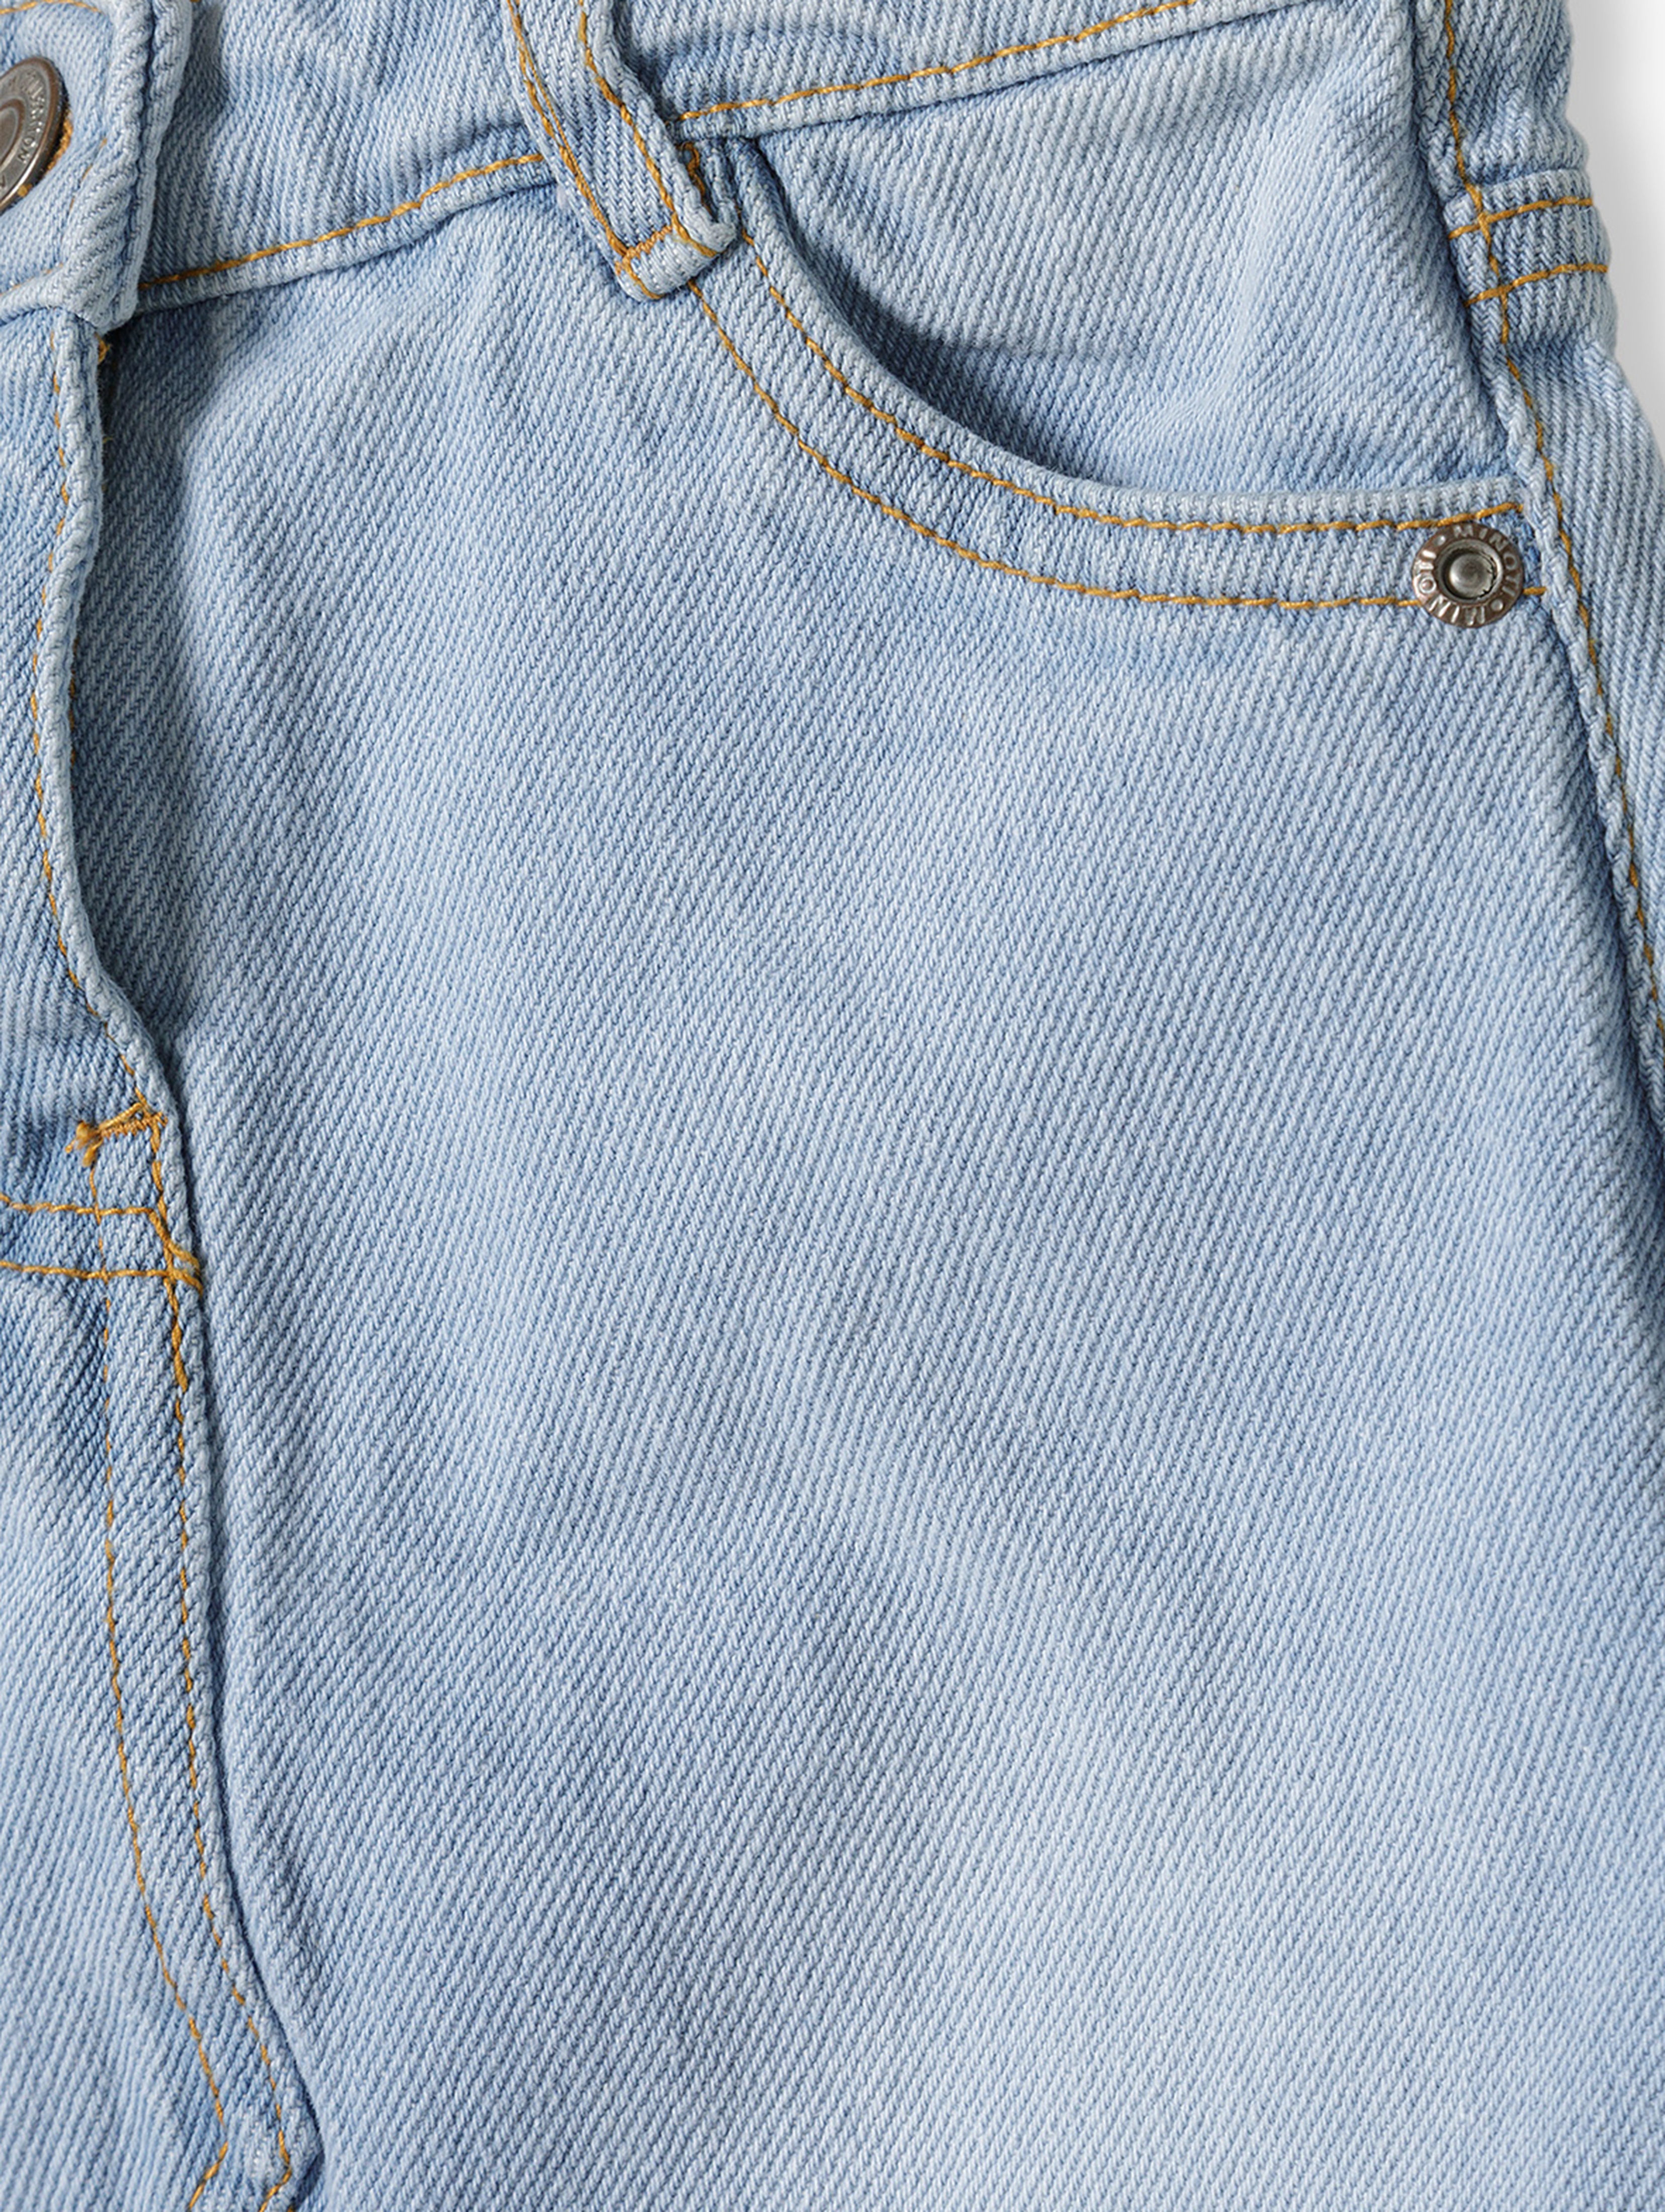 Jeansowa spódniczka krótka jasnoniebieska dla niemowlaka